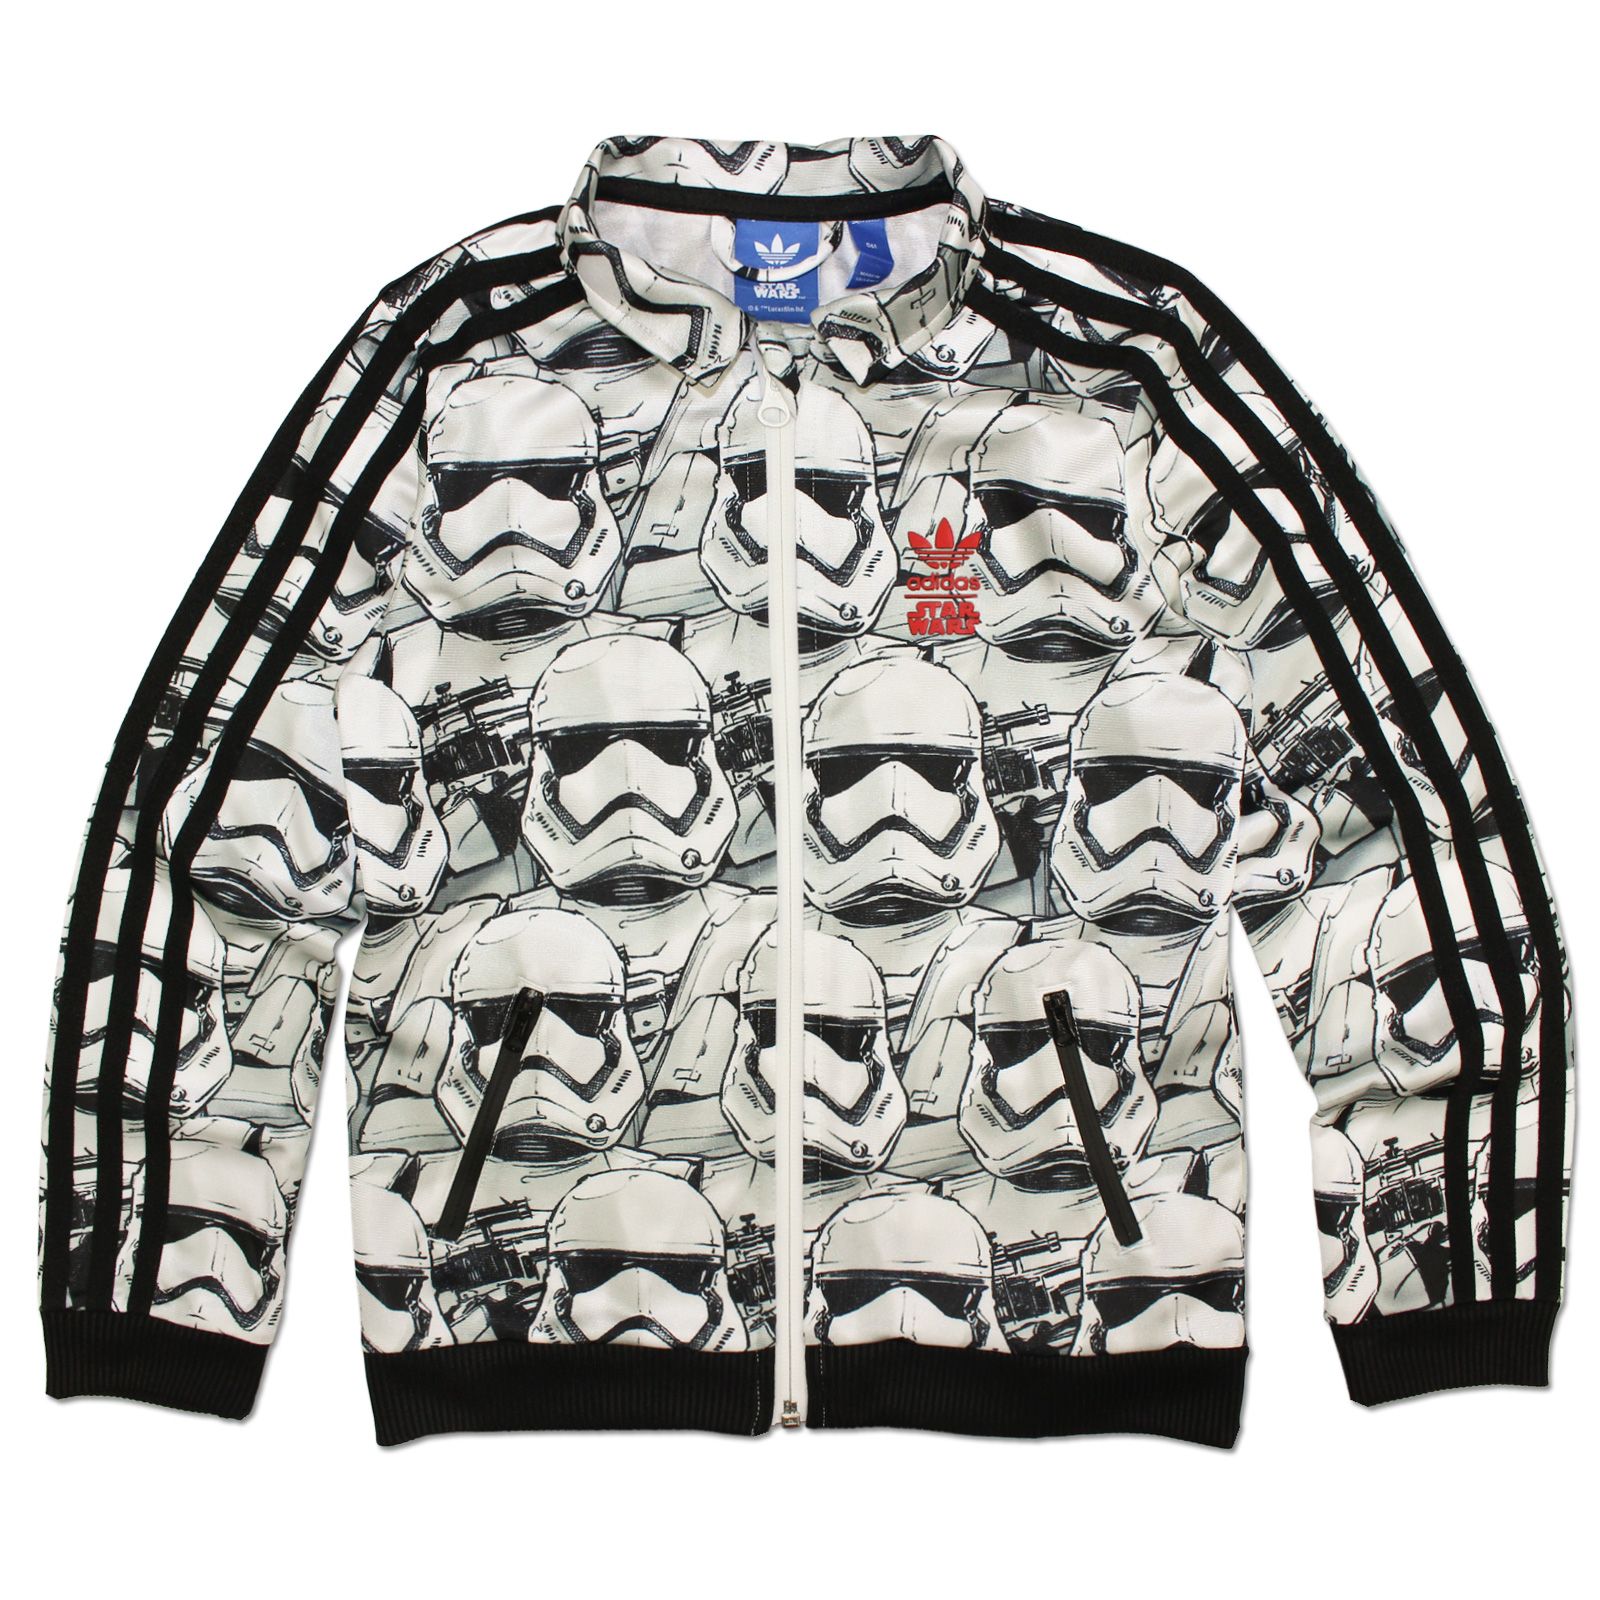 star wars adidas jacket